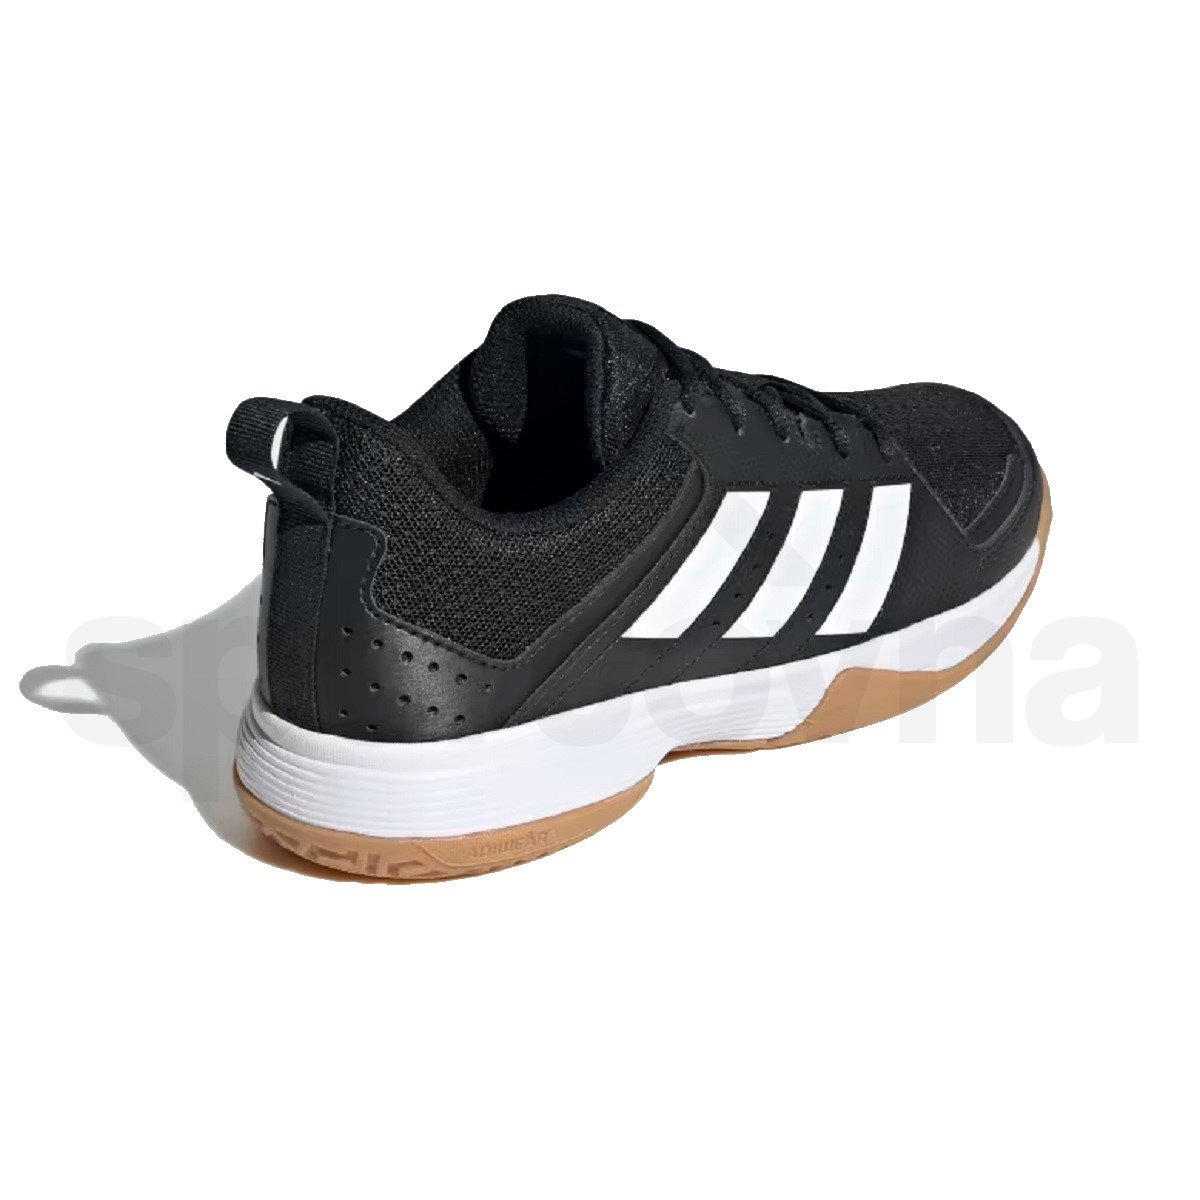 Obuv Adidas Ligra 7 J - černá/bílá